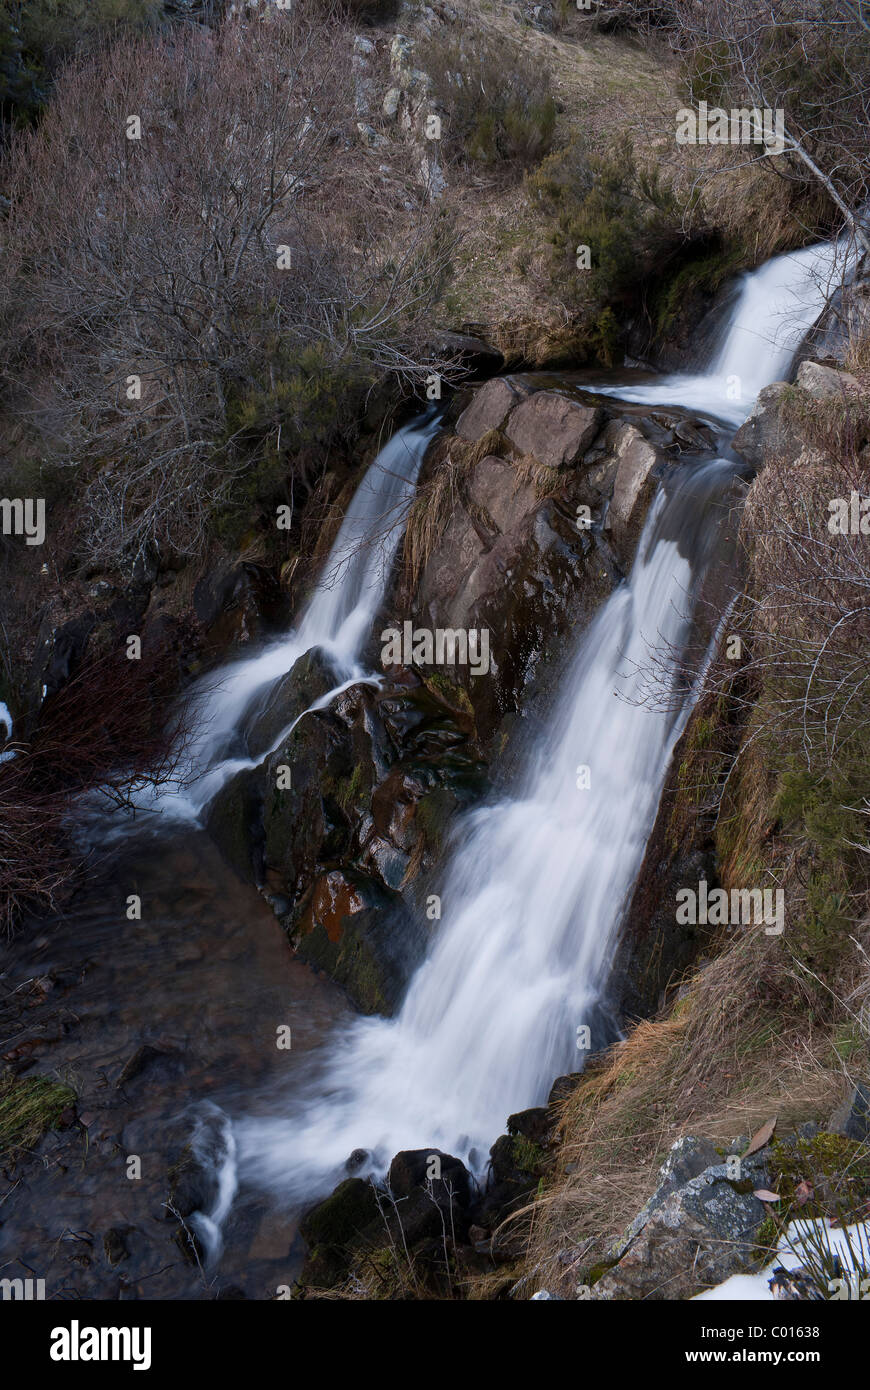 Cascade dans un ruisseau rocky espagnol dans le nord de l'Espagne sur la route de "calderones' Banque D'Images